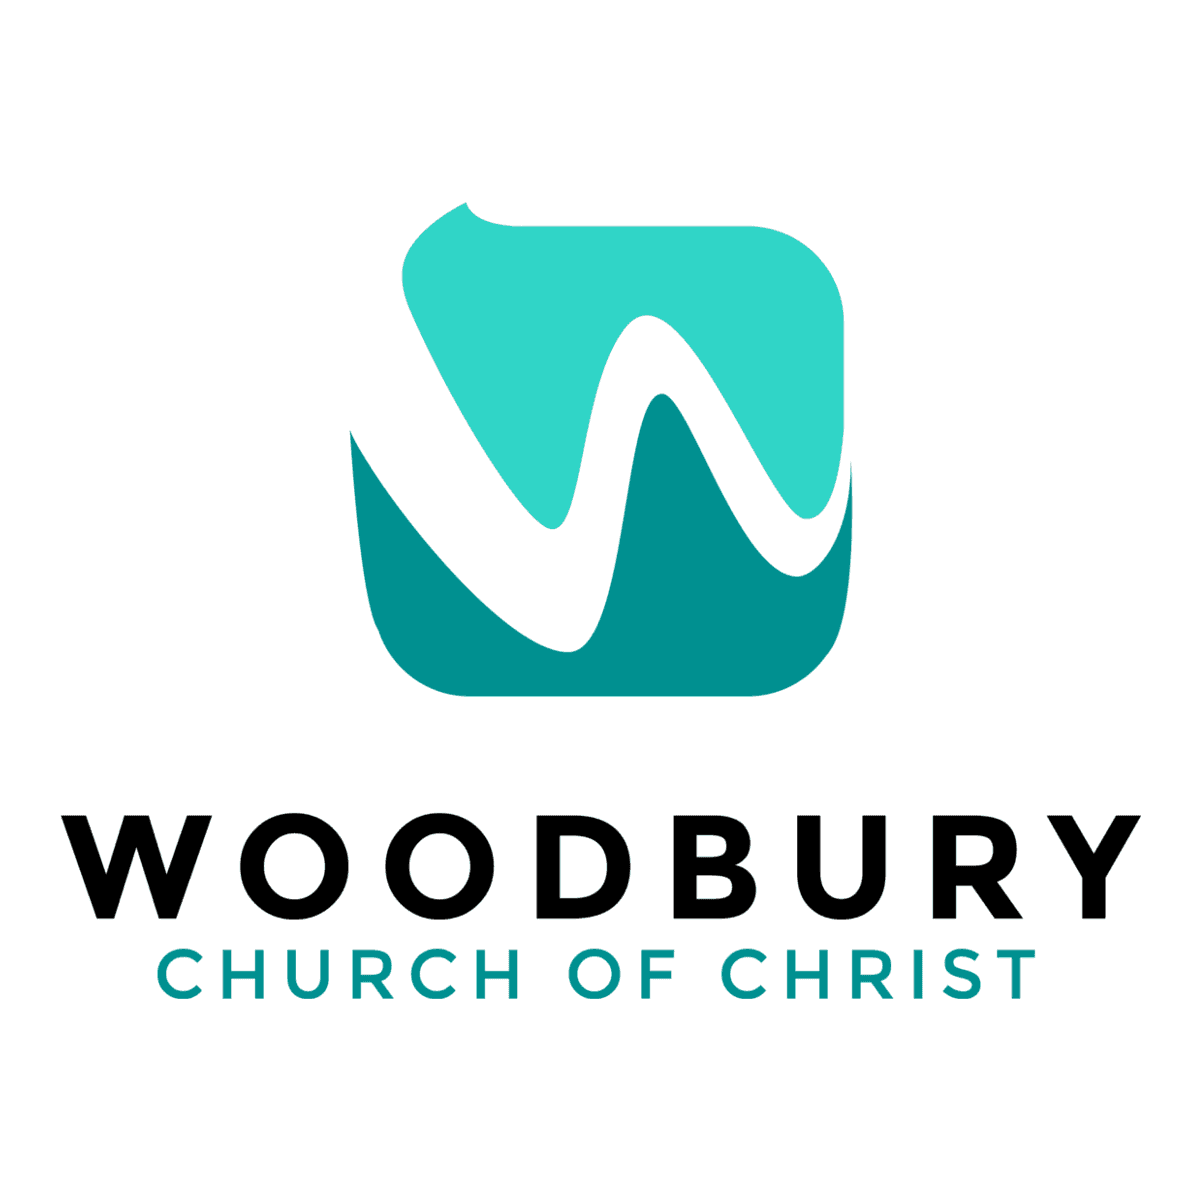 Woodbury Church logo, a capital W in script font